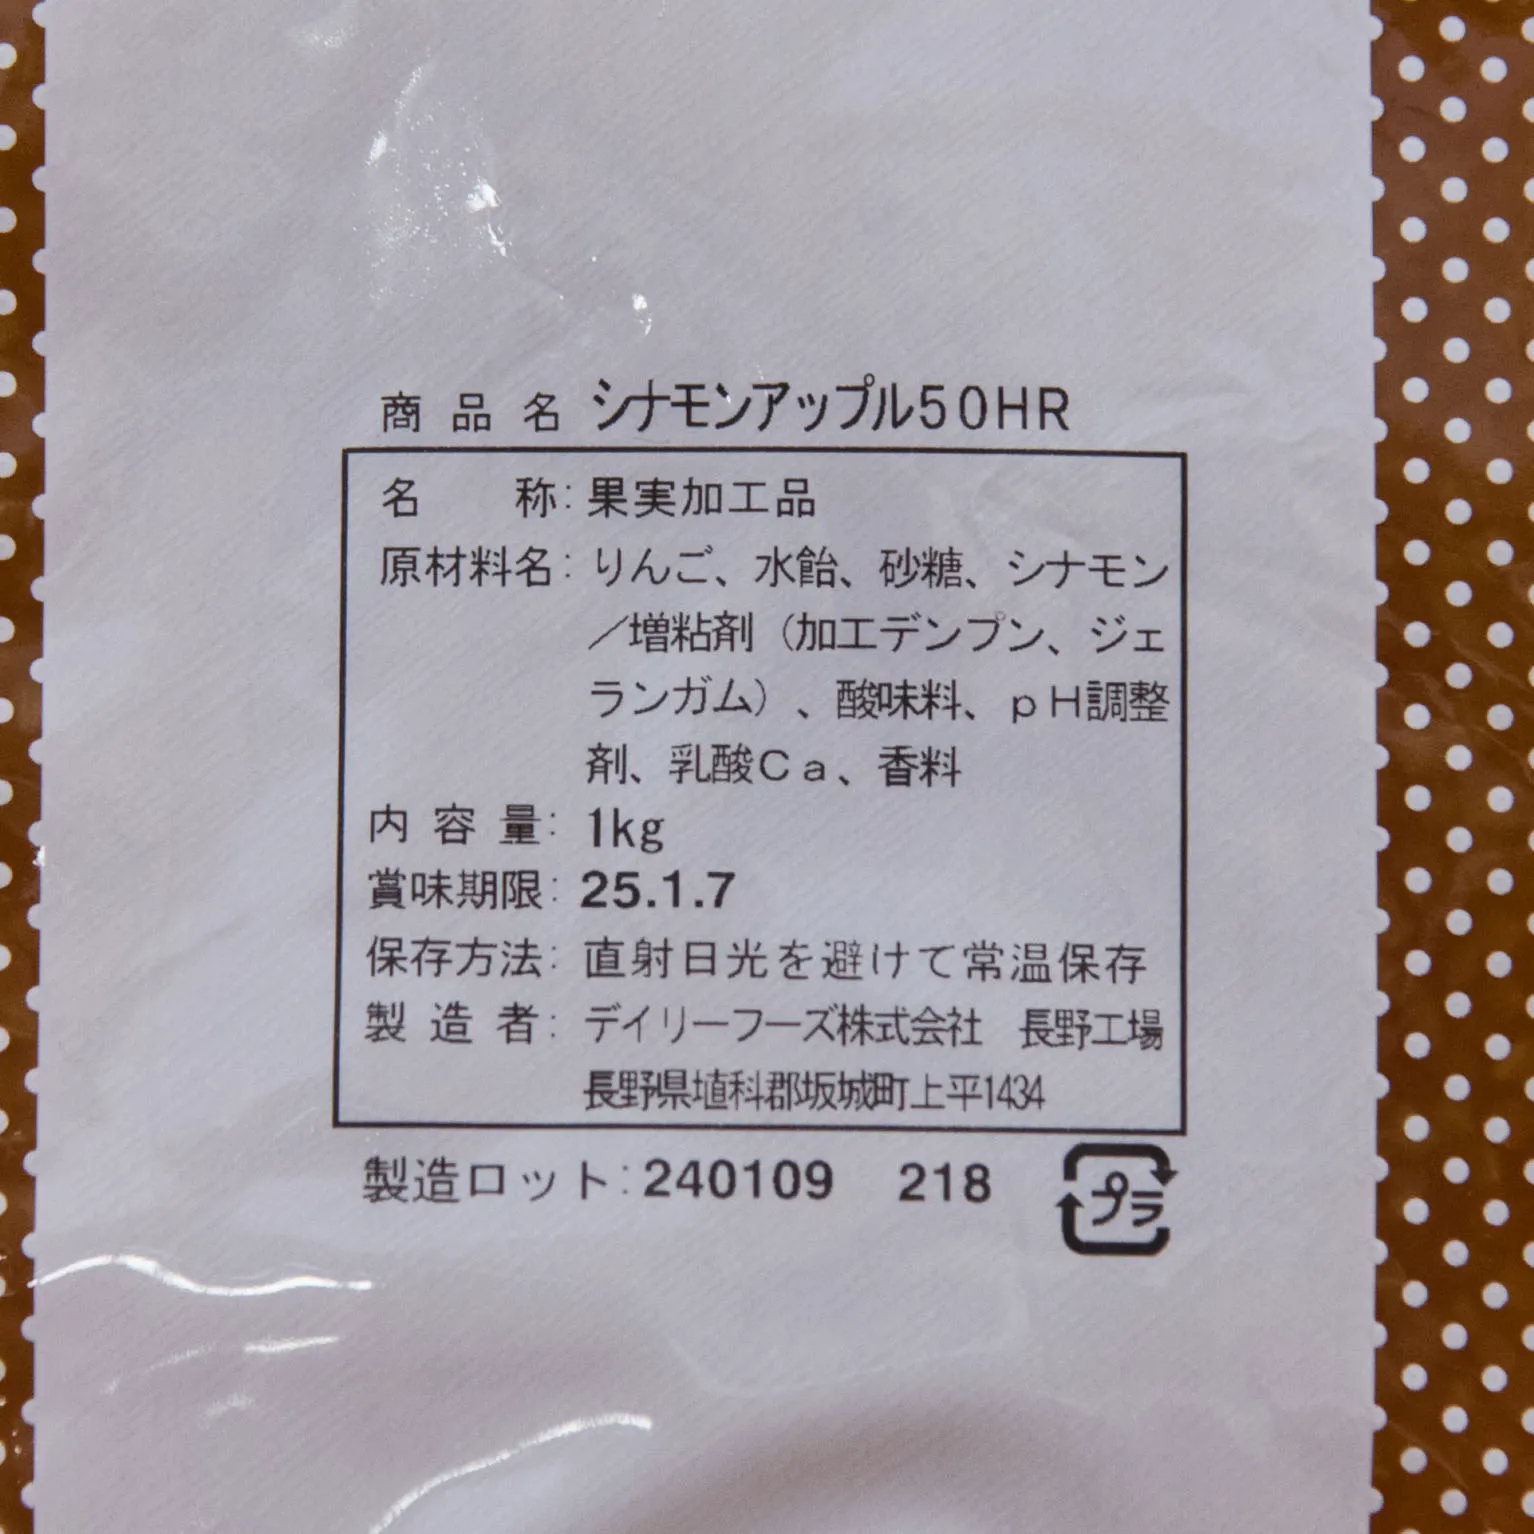 シナモンアップル50HR 1